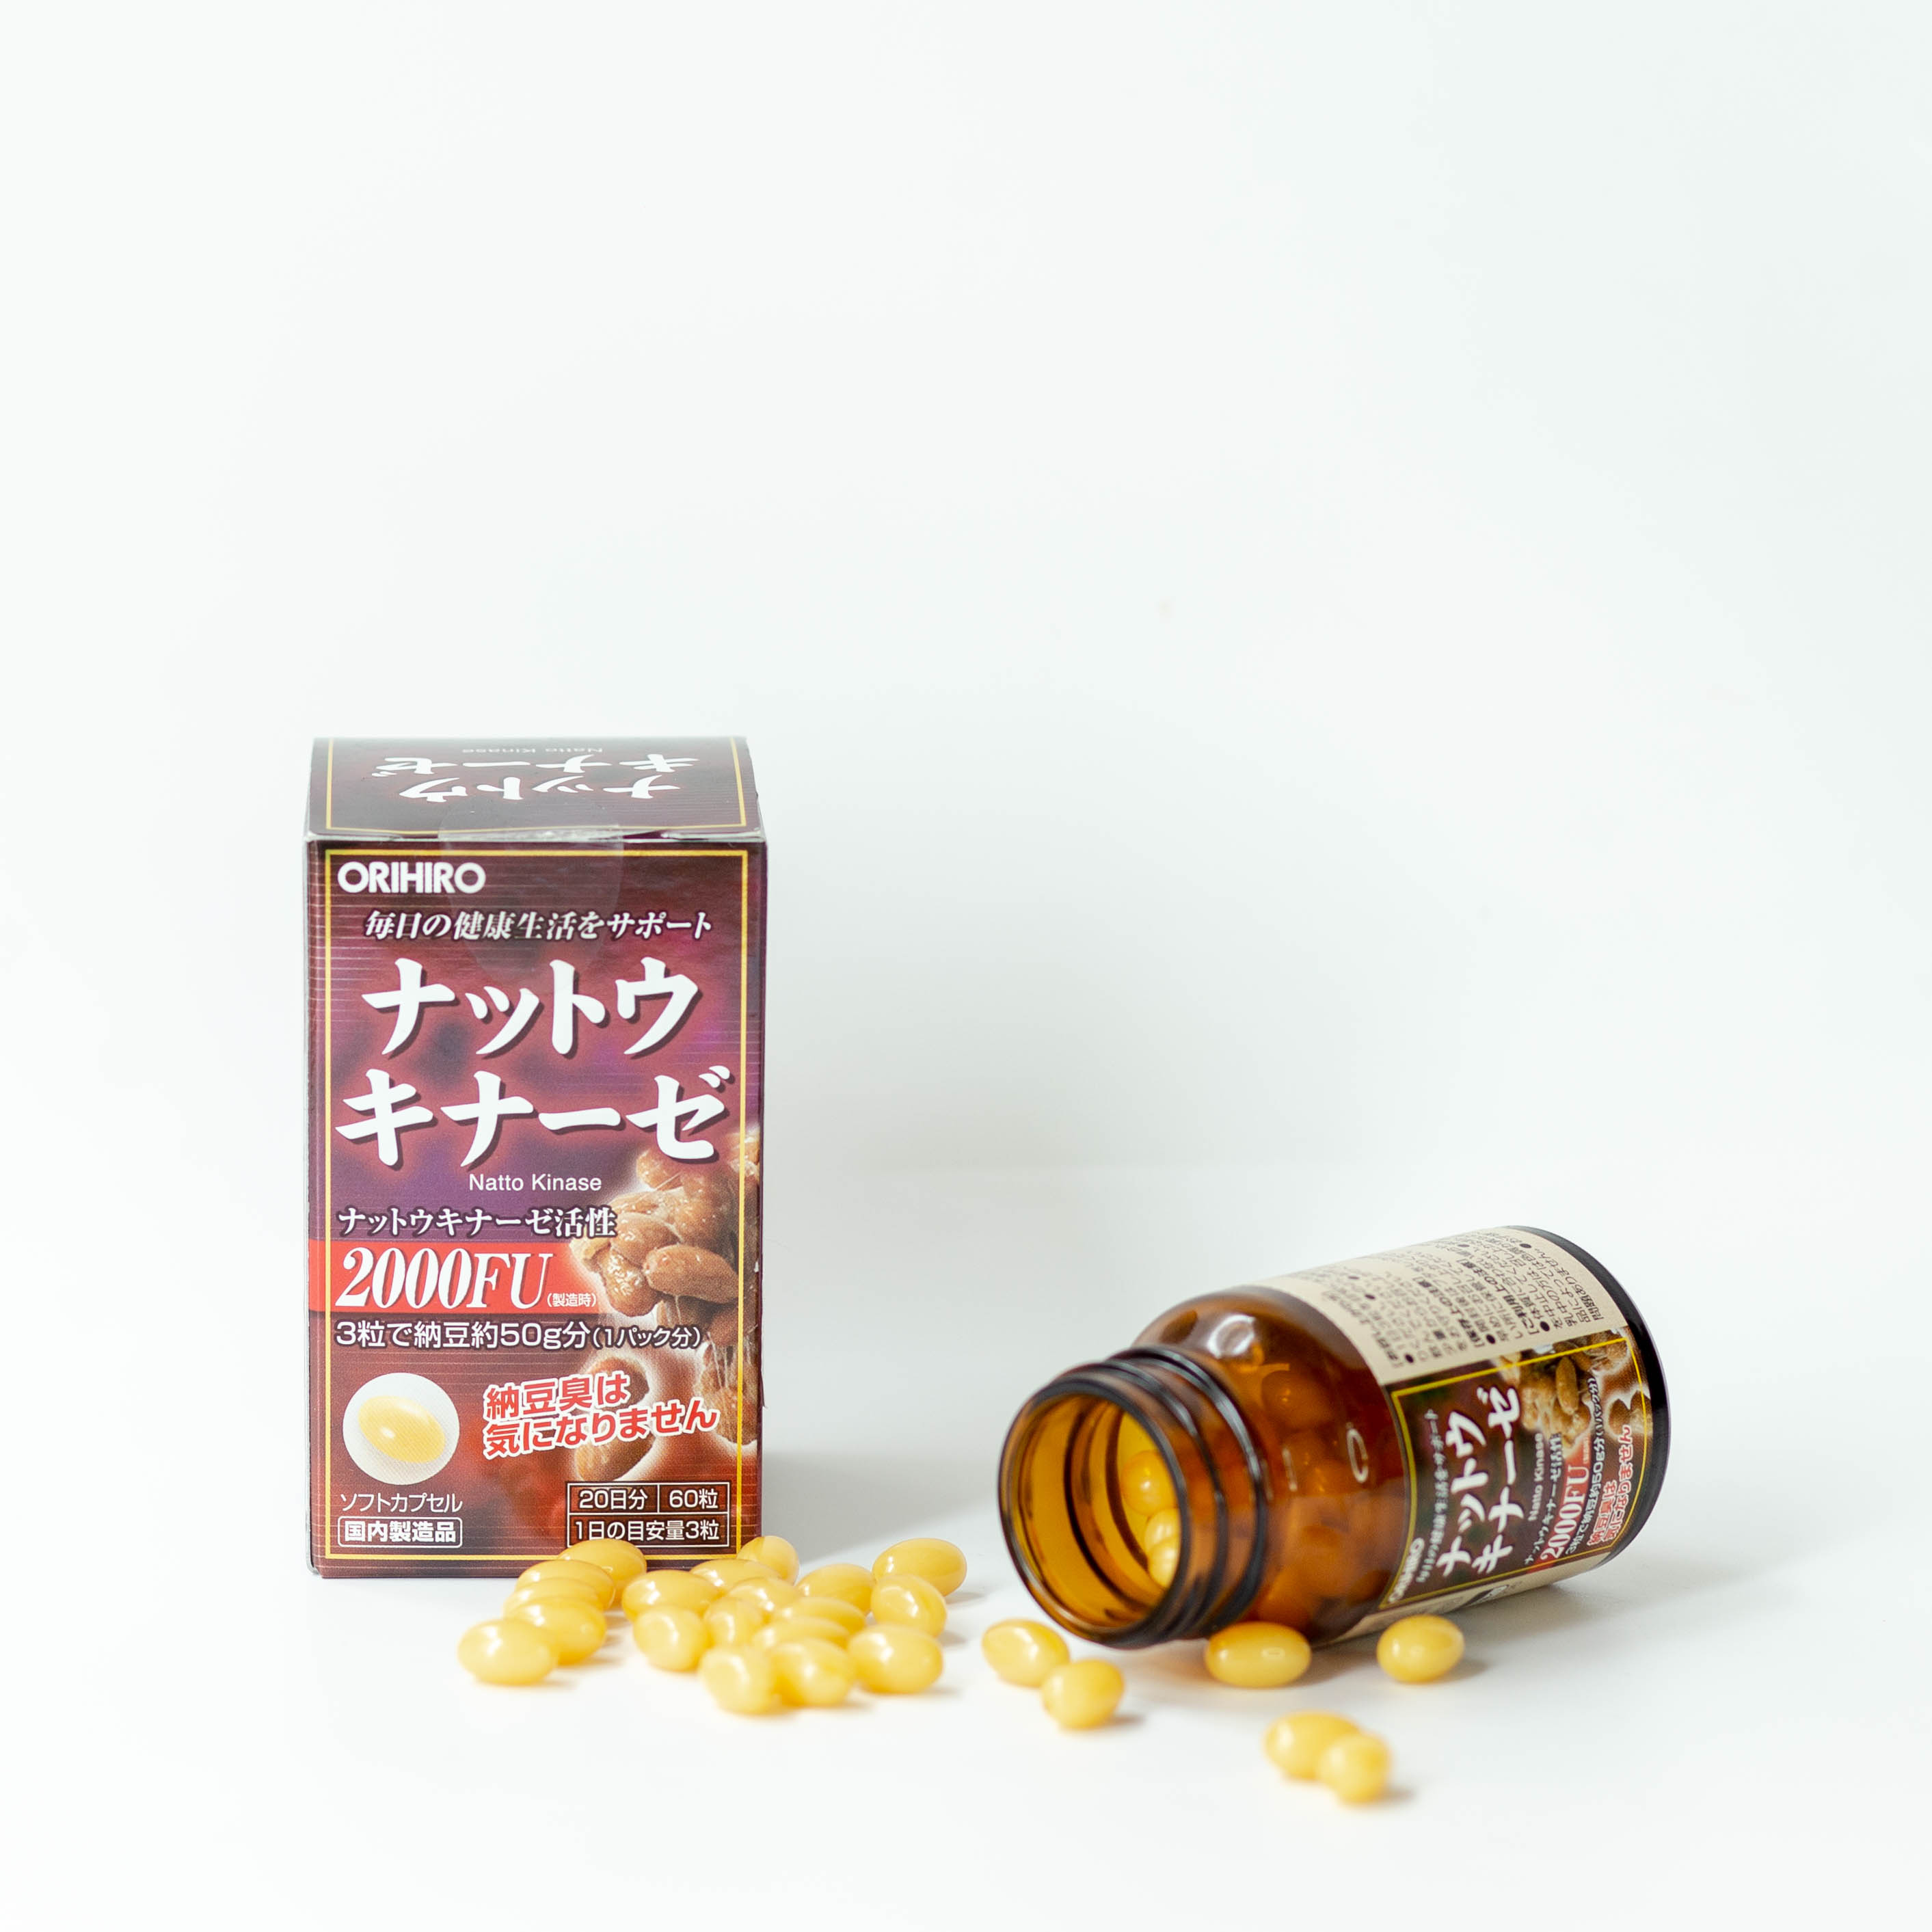 Viên uống Natto Kinase Orihiro Nhật Bản, tăng tuần hoàn máu,  ngăn ngừa tai biến, chống đột quỵ 60 viên/hộp - HÀNG CHÍNH HÃNG